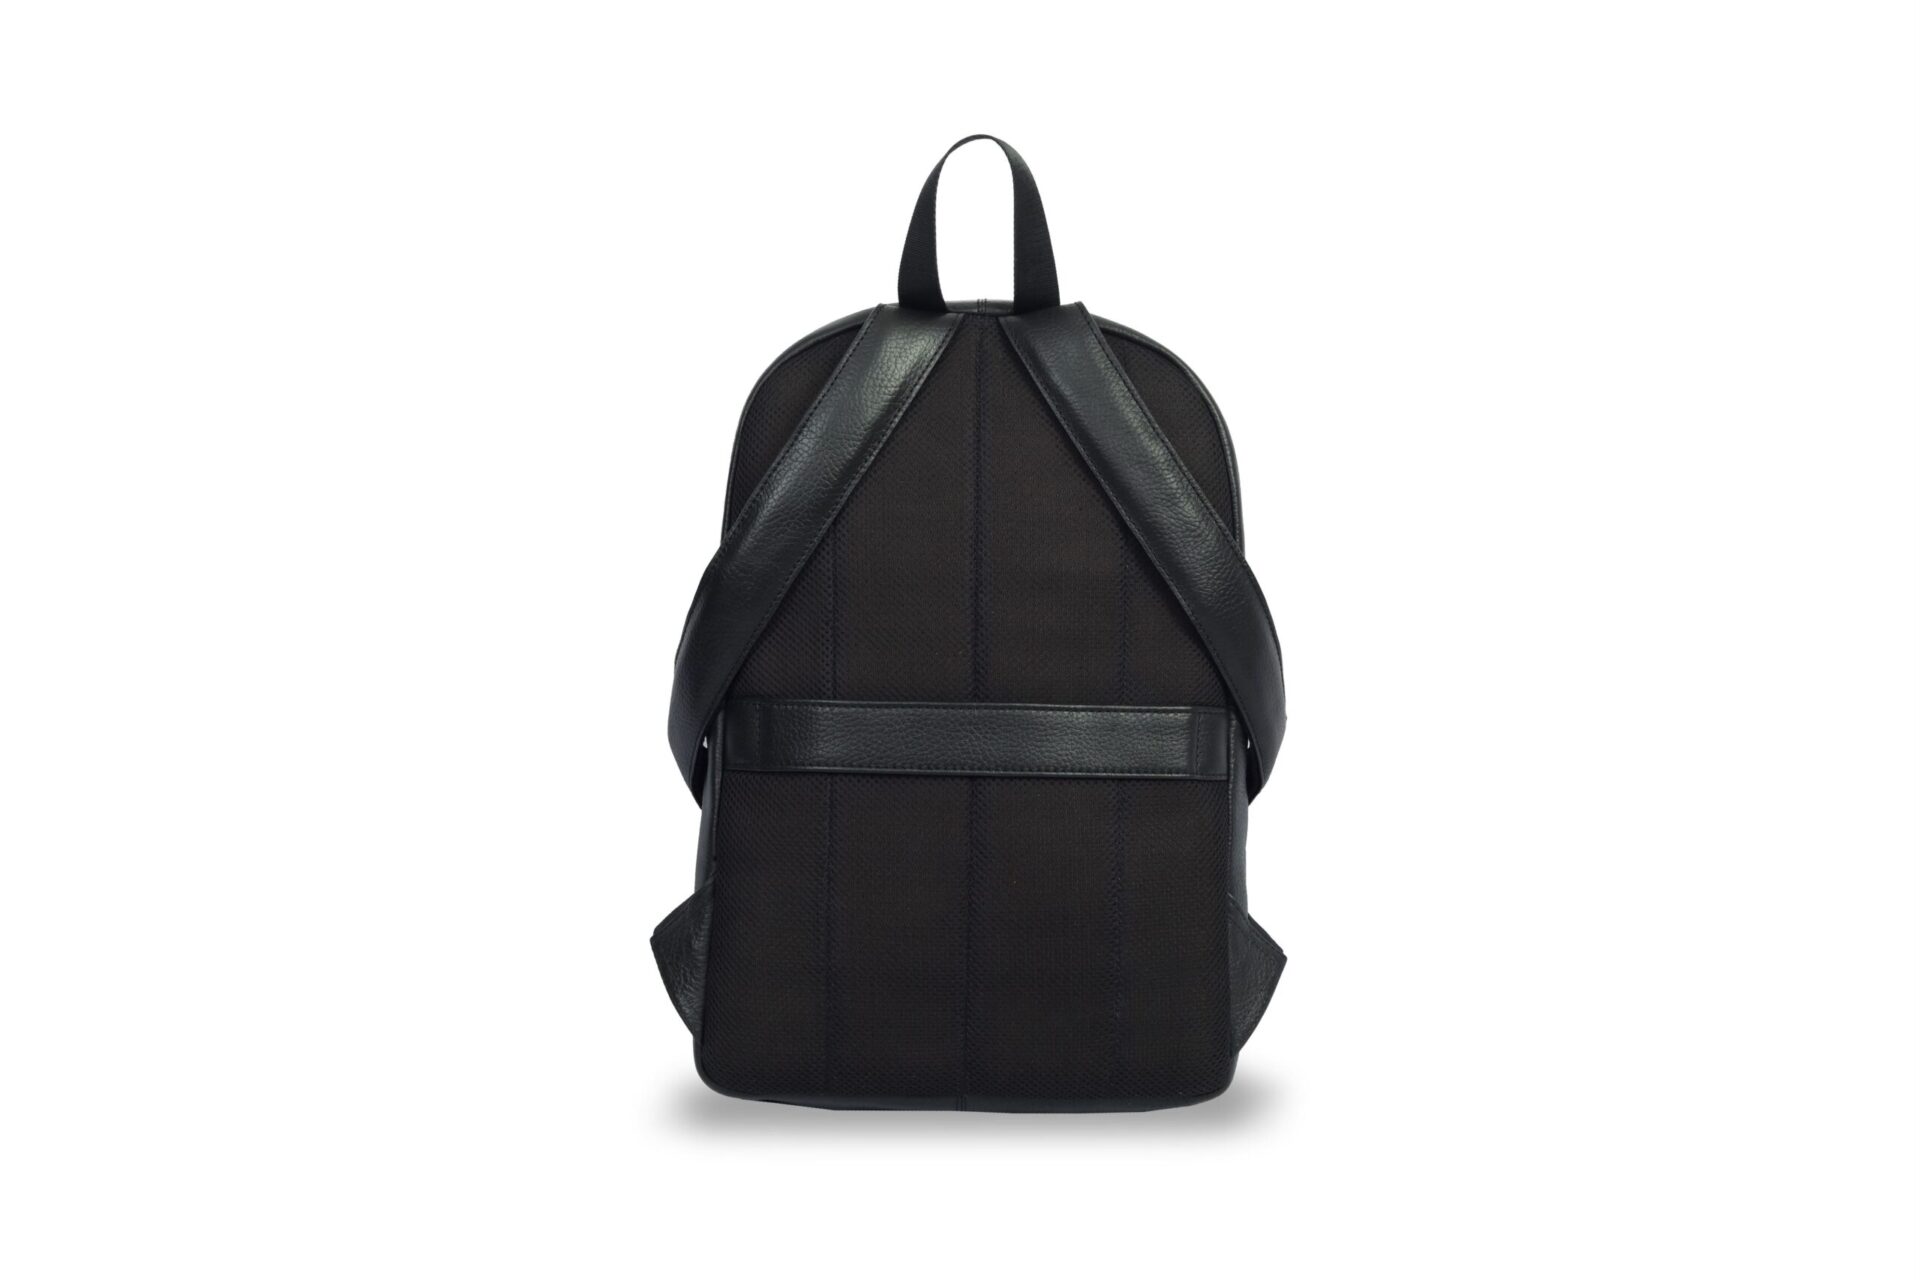 MICHAEL KORS Pride Elliot Medium Pebbled Leather Backpack - Black